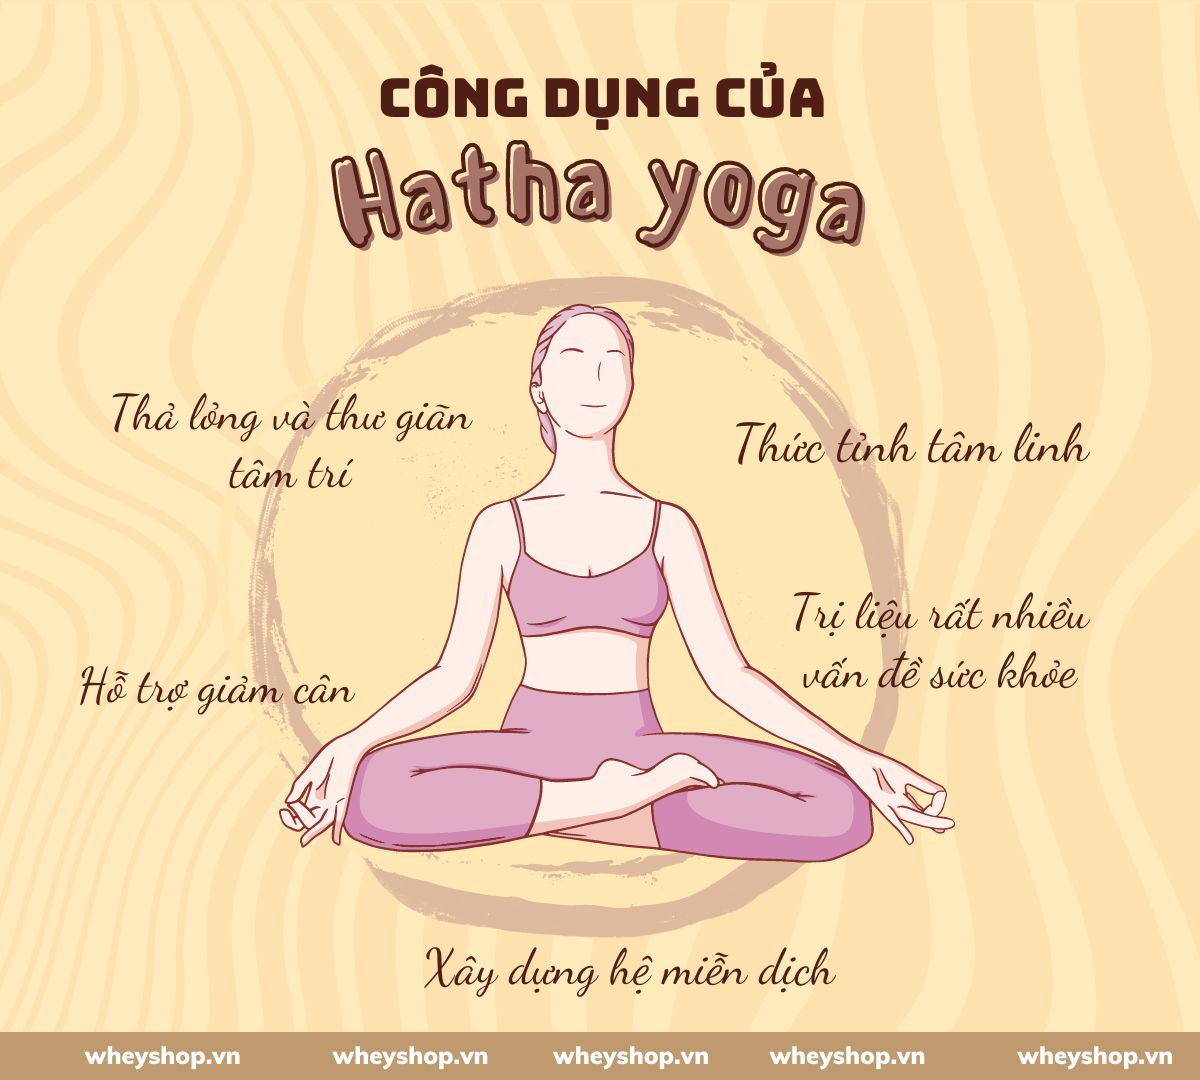 Hatha Yoga có lẽ là một thuật ngữ phổ biến đối với những người tập yoga lâu năm. Nhưng đối với người mới bắt đầu hoặc chưa biết gì về yoga thì đây vẫn còn là...